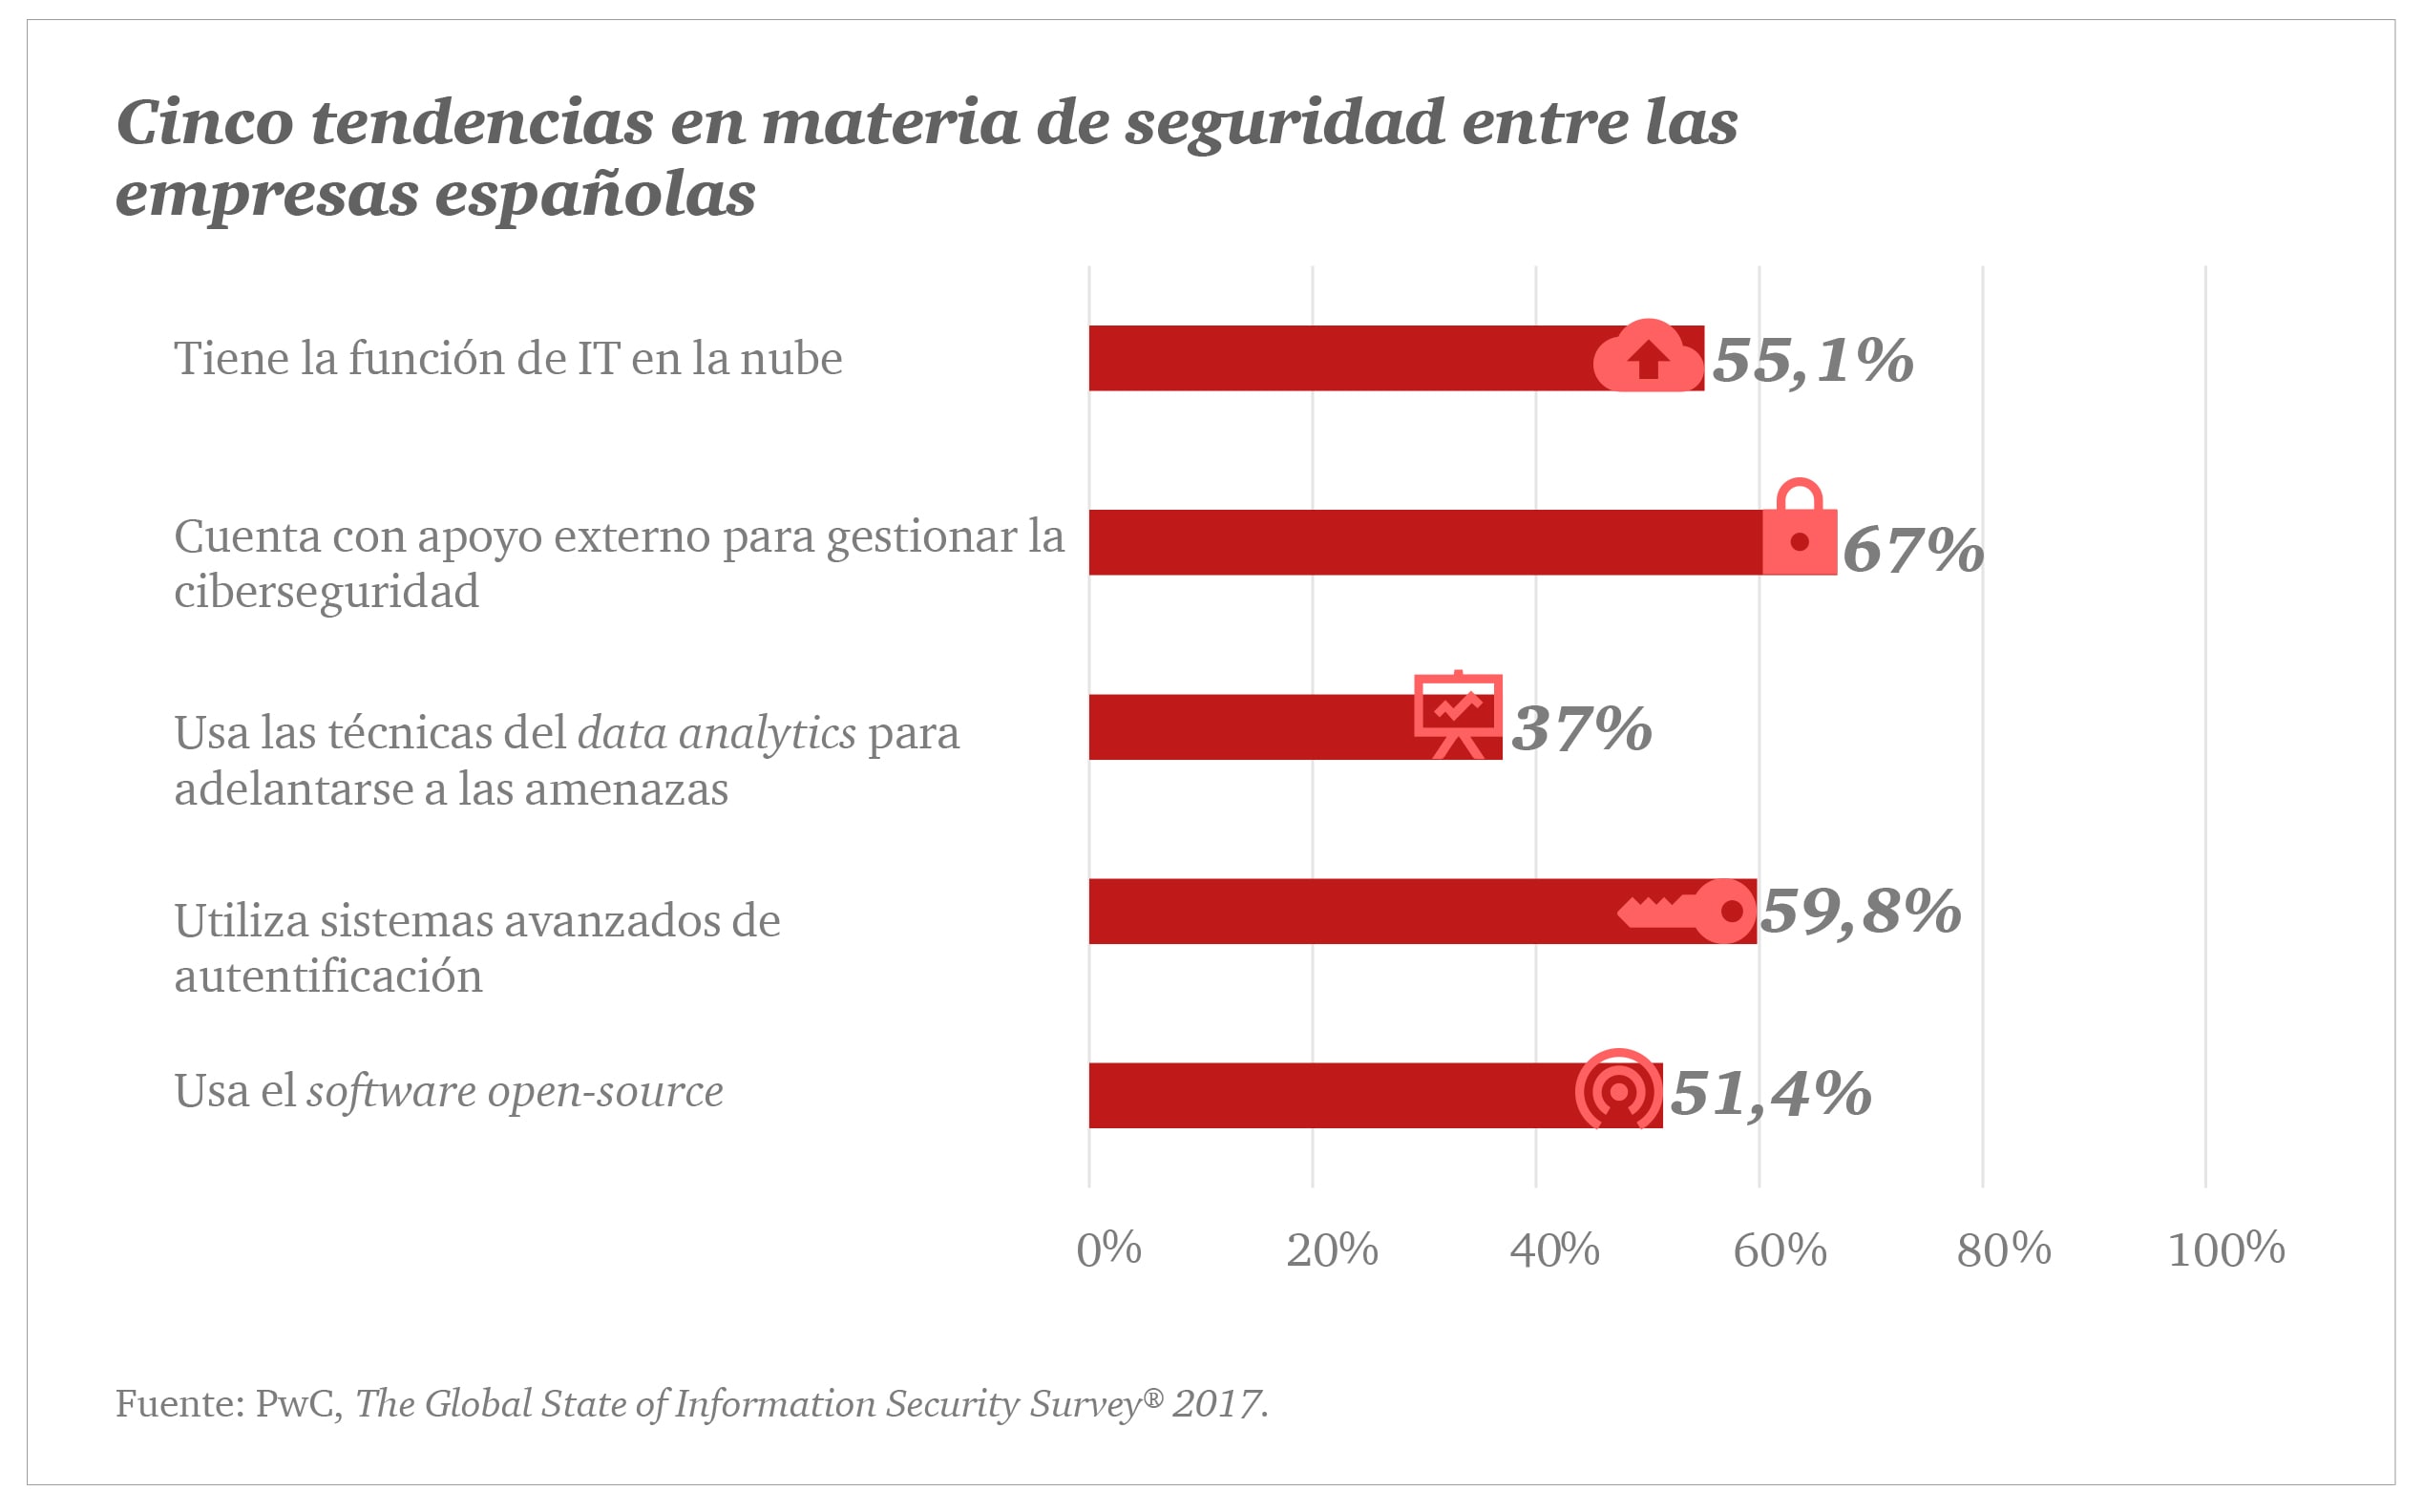 5 tendencias en materia de seguridad entre las empresas españolas